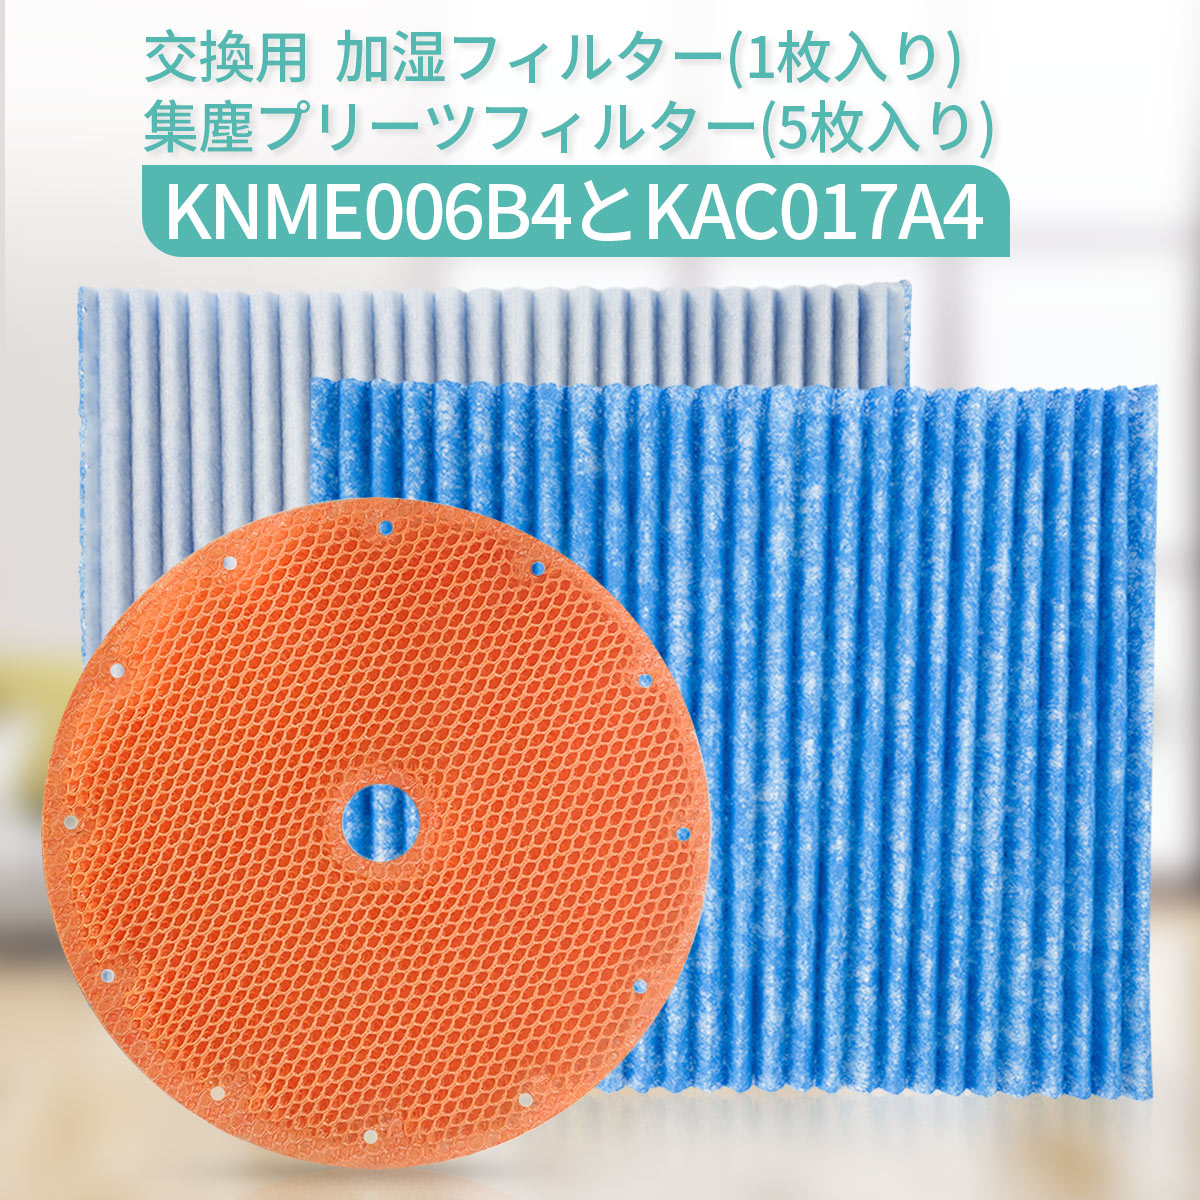 ダイキン空気清浄機 交換用プリーツフィルター KAC017A4 3個 品数豊富